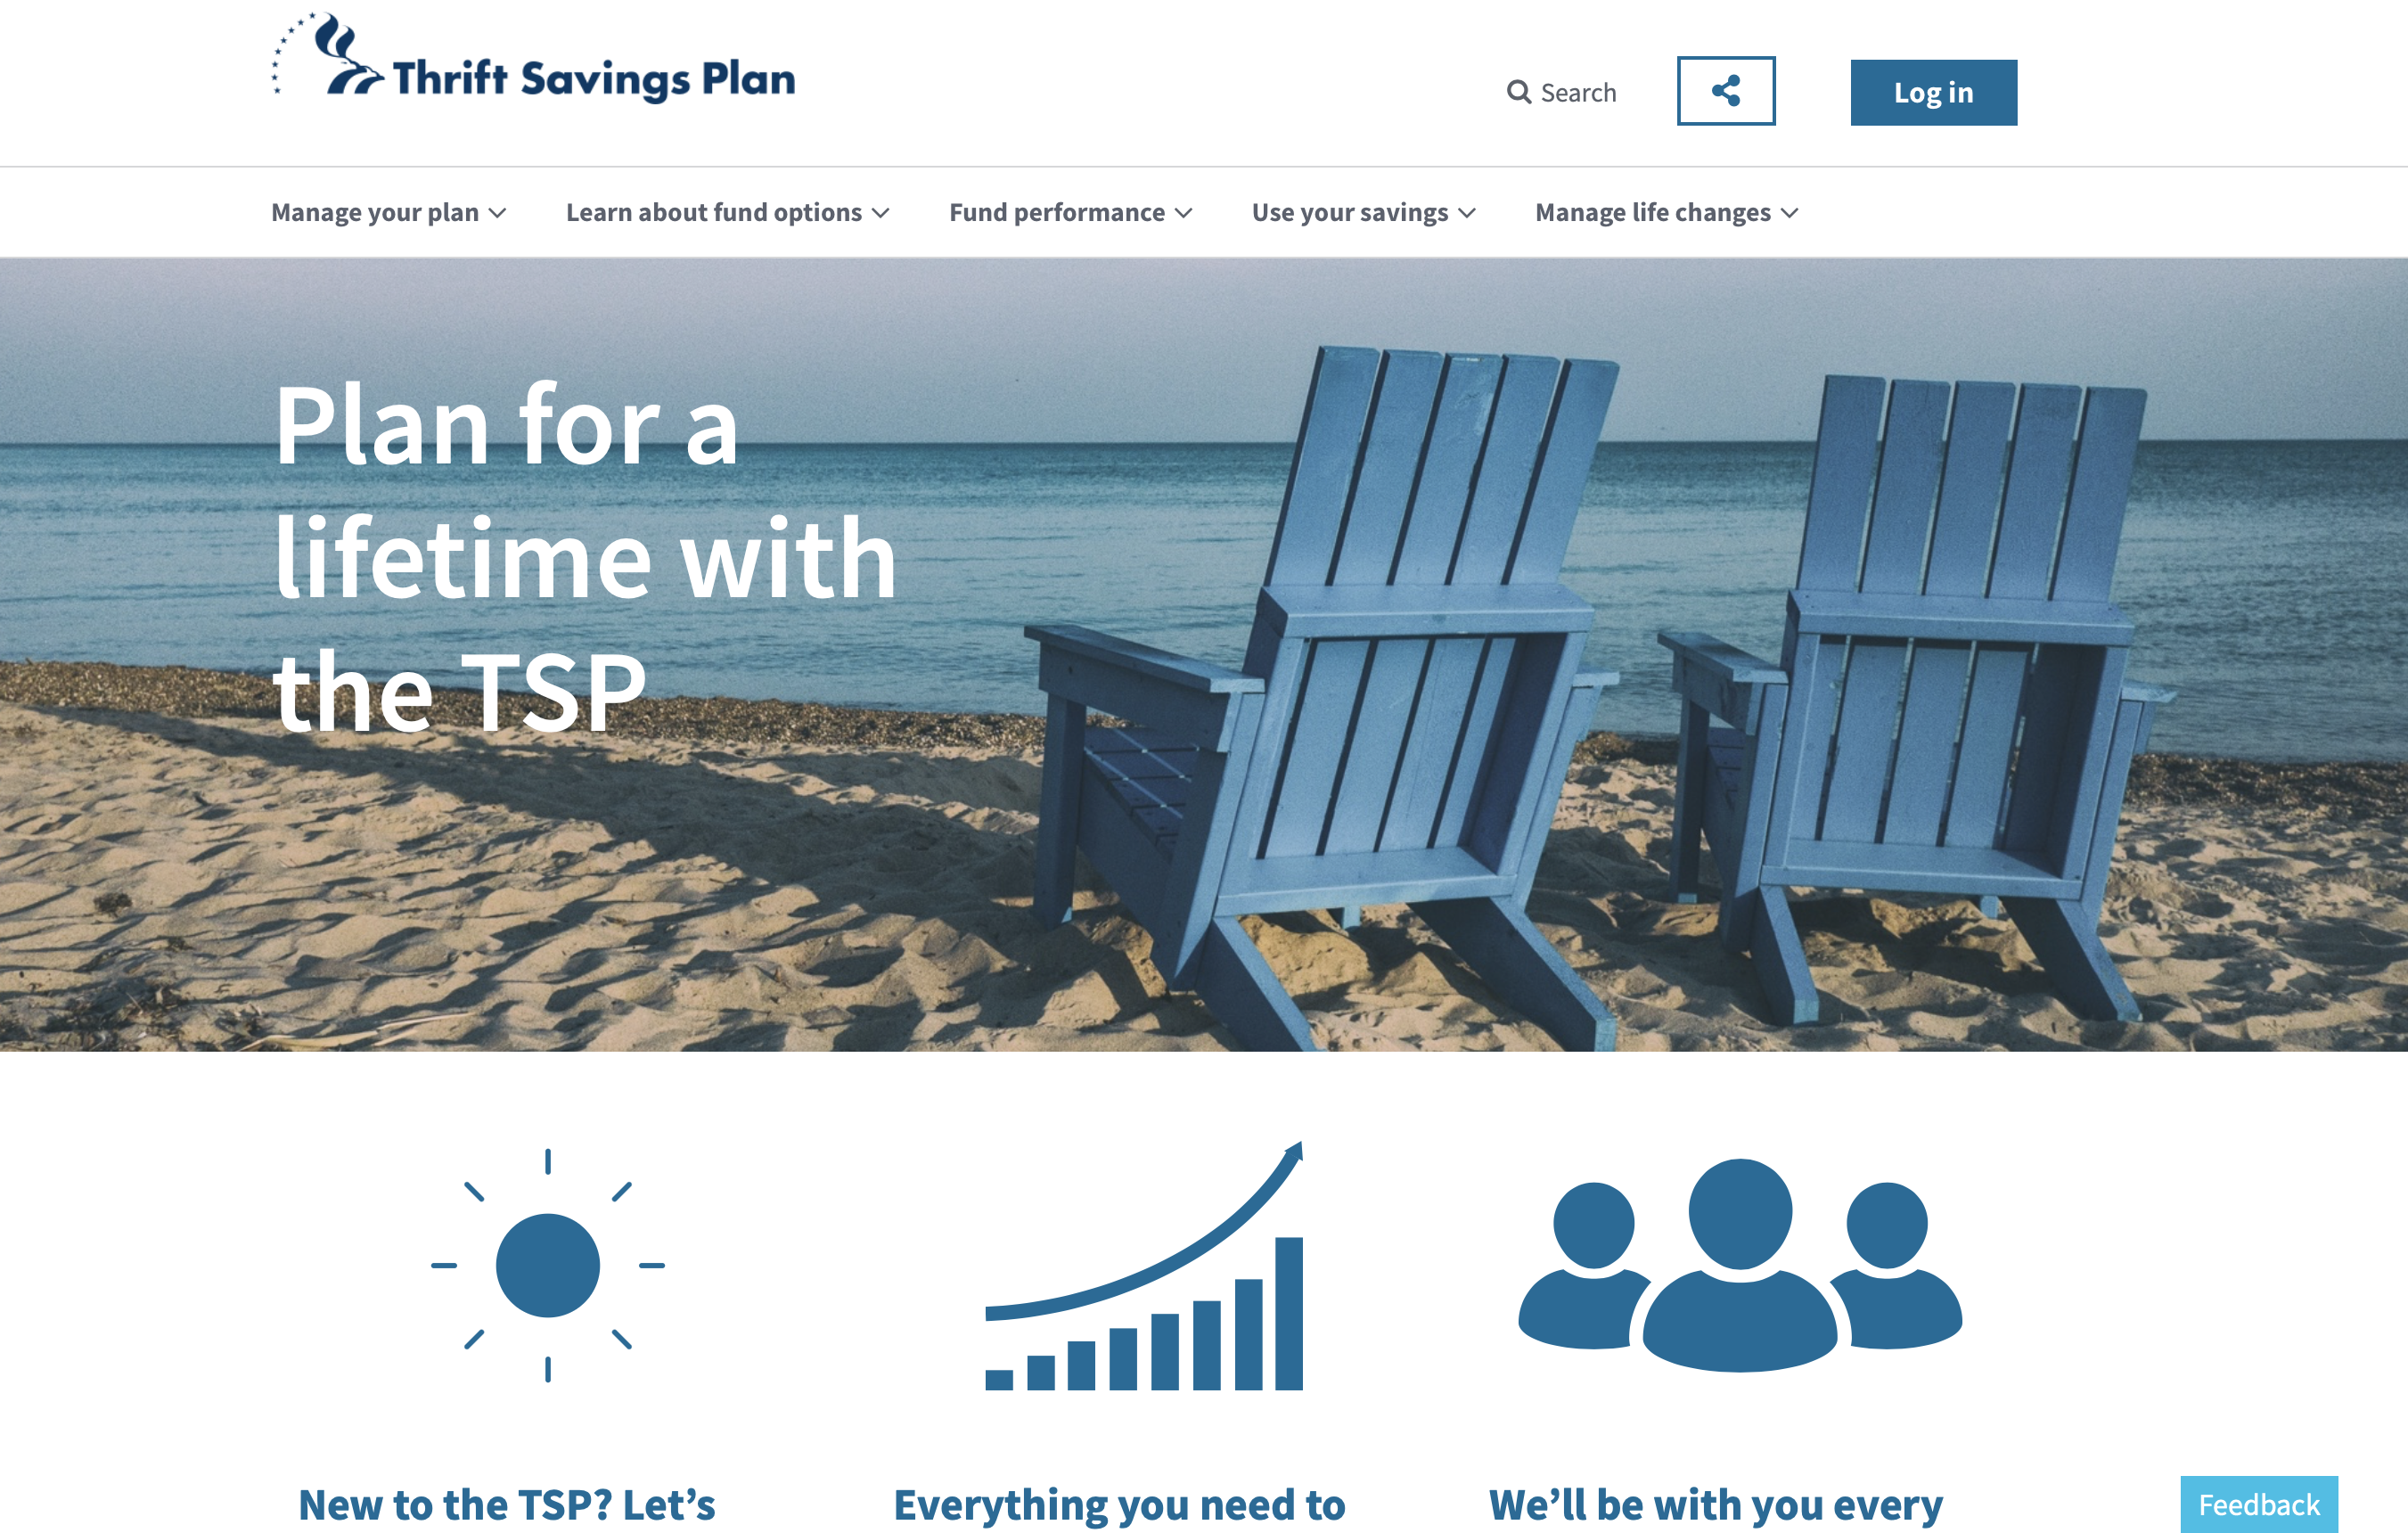 redesigned TSP.gov website